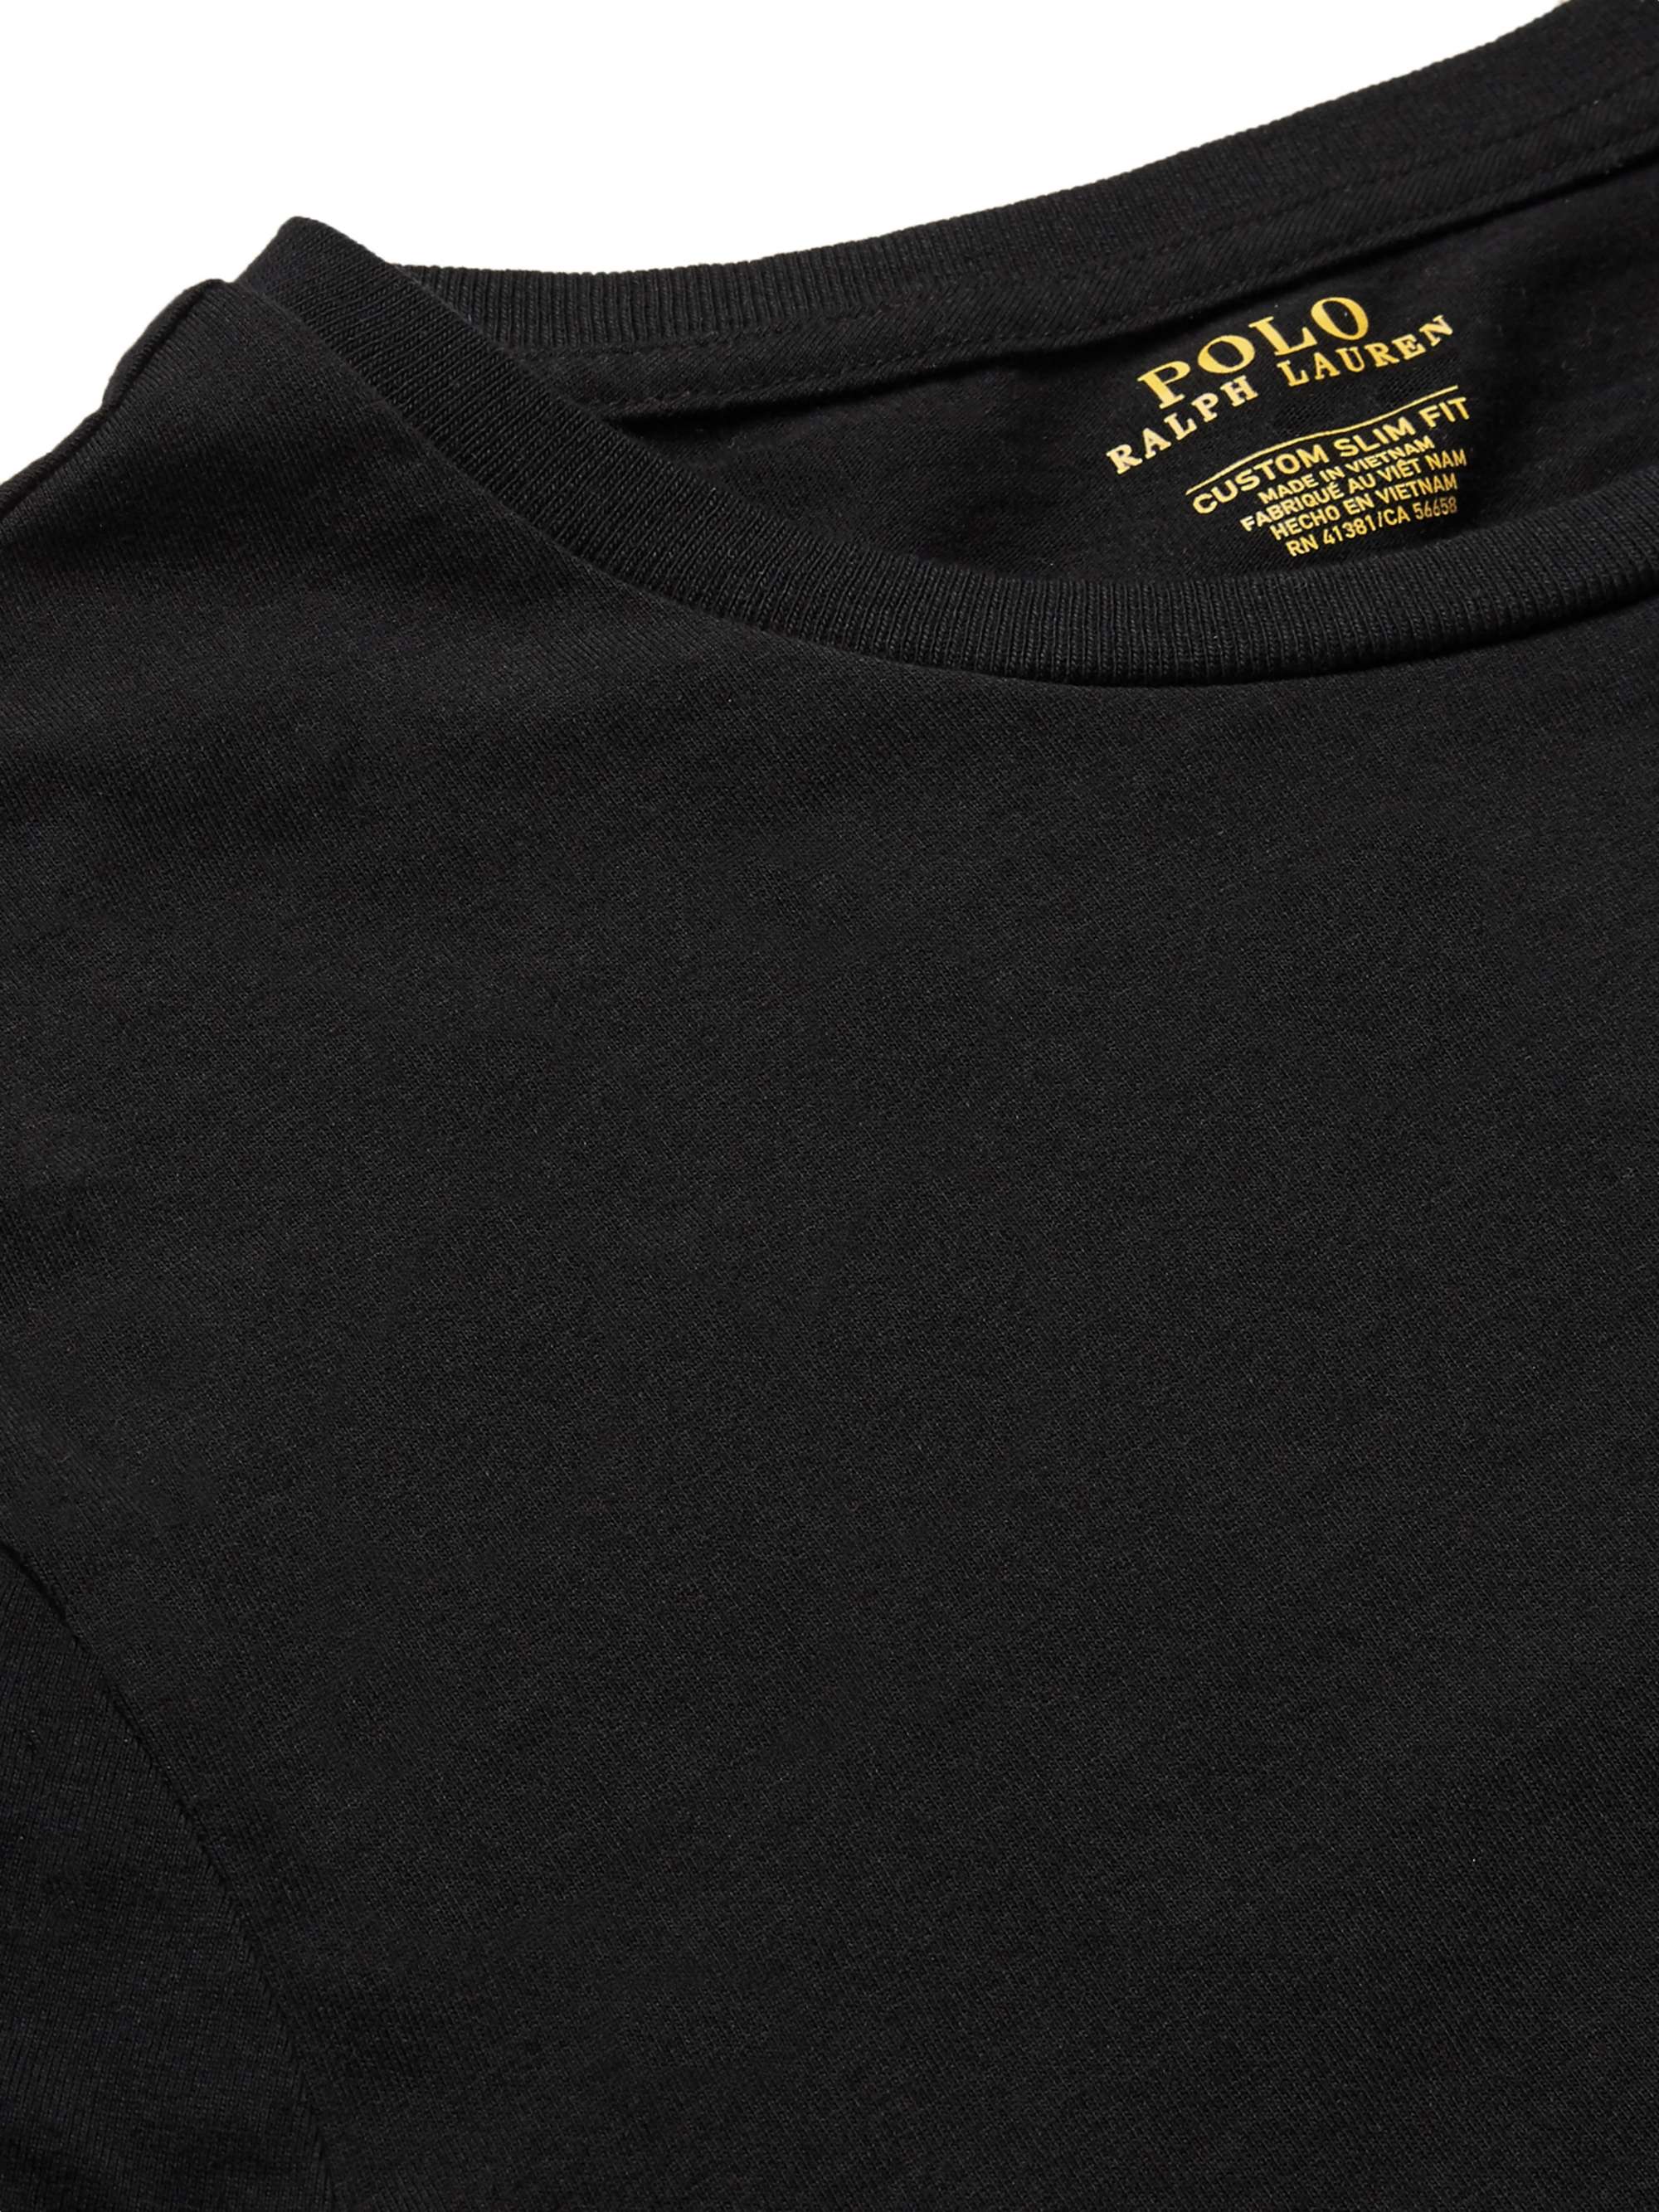 Black Slim-Fit Cotton T-Shirt | POLO RALPH LAUREN | MR PORTER